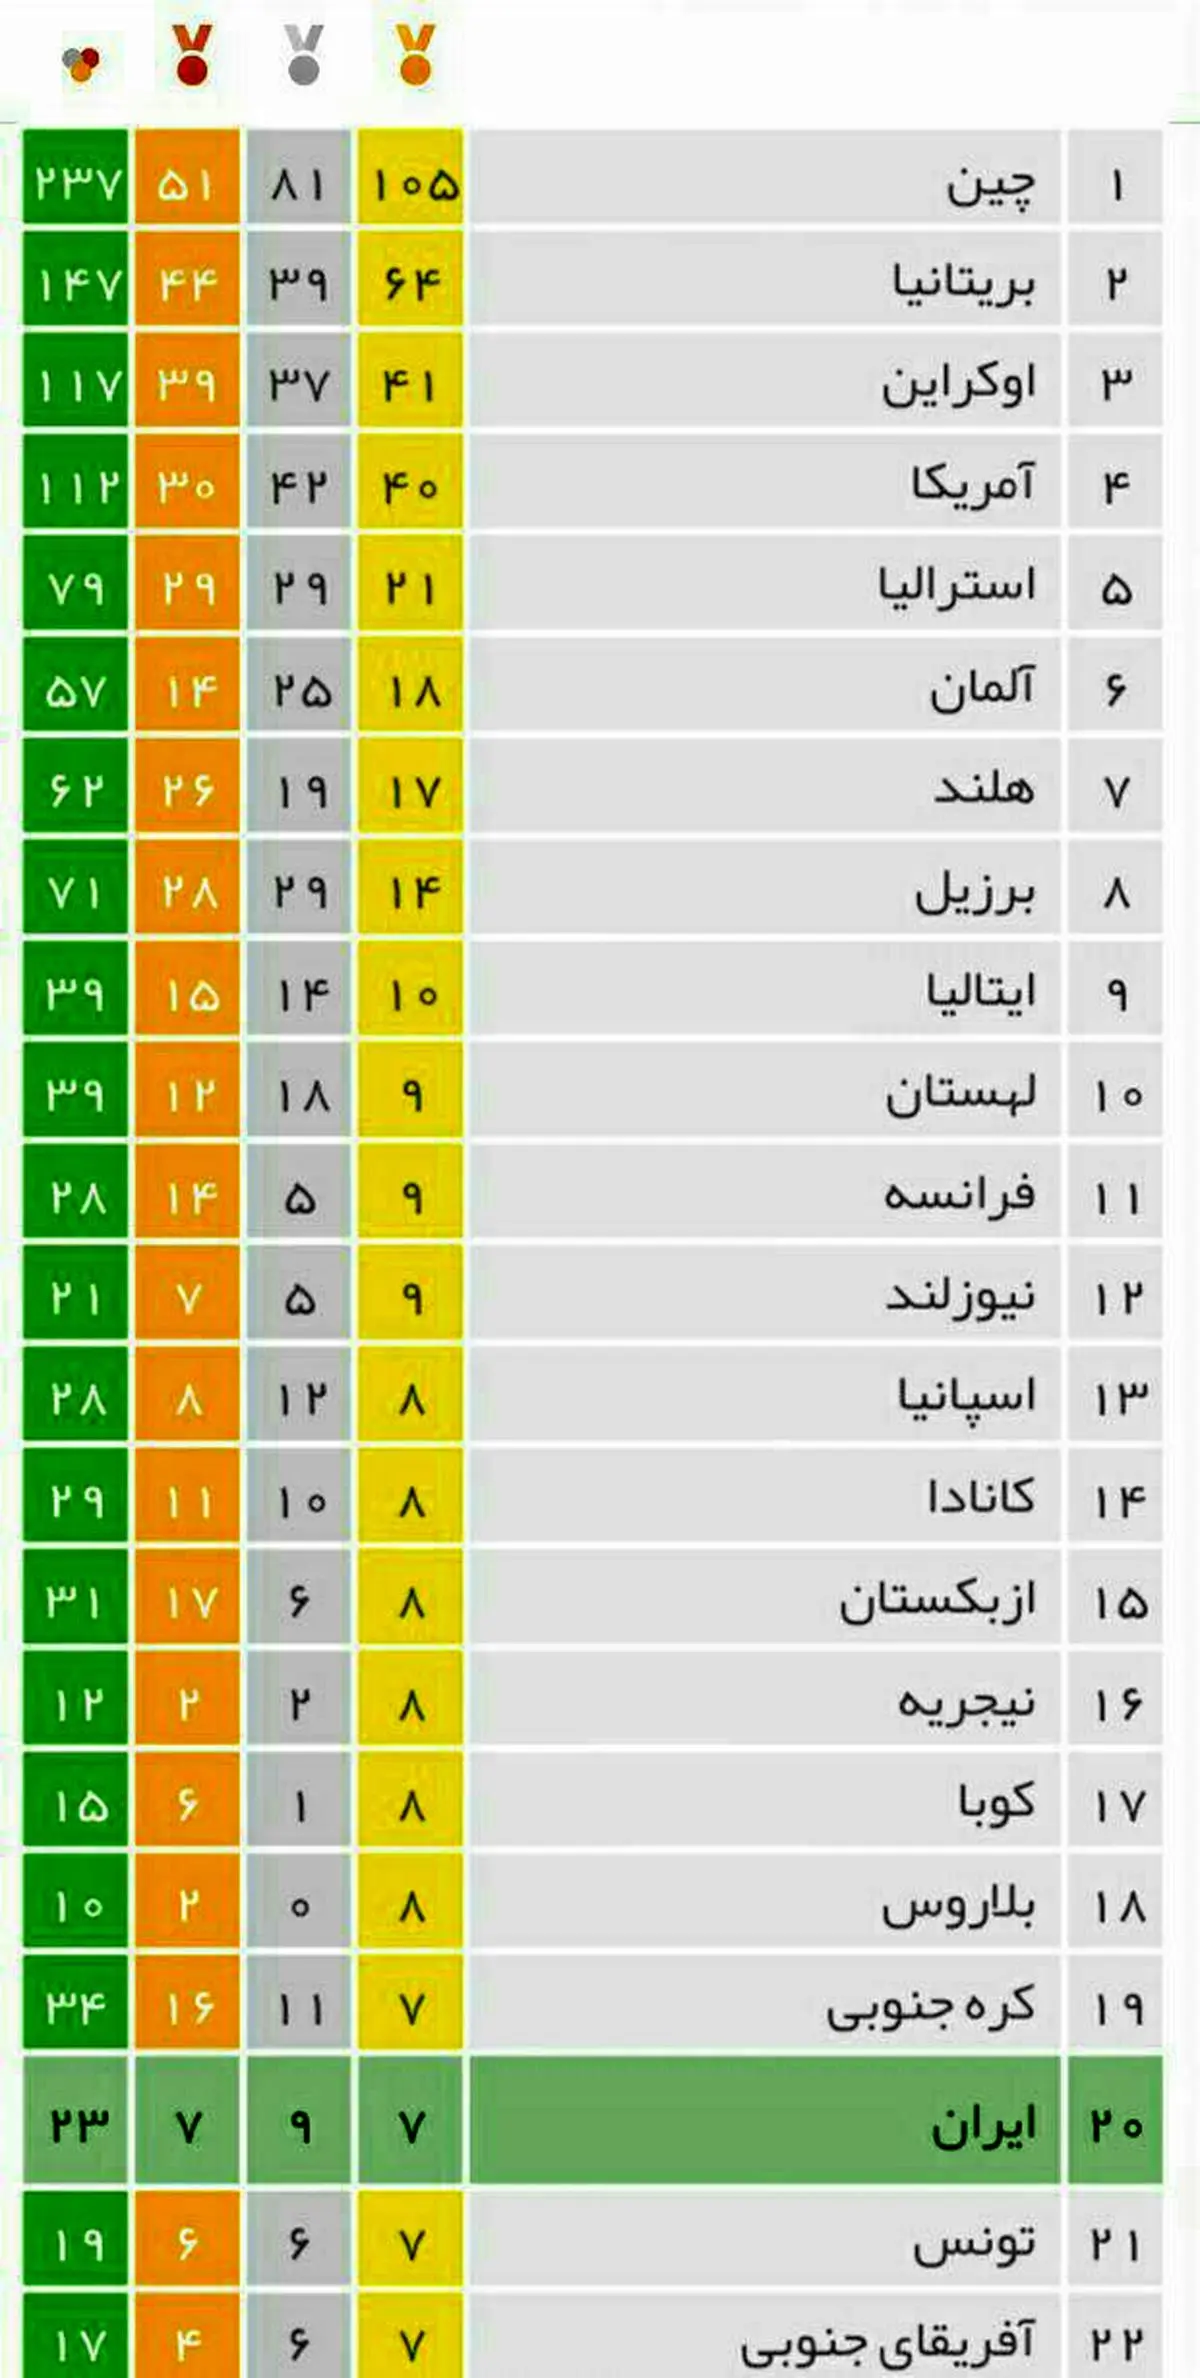 جدول توزیع مدال پارالمپیک ریو ۲۰۱۶ در پایان روز دهم